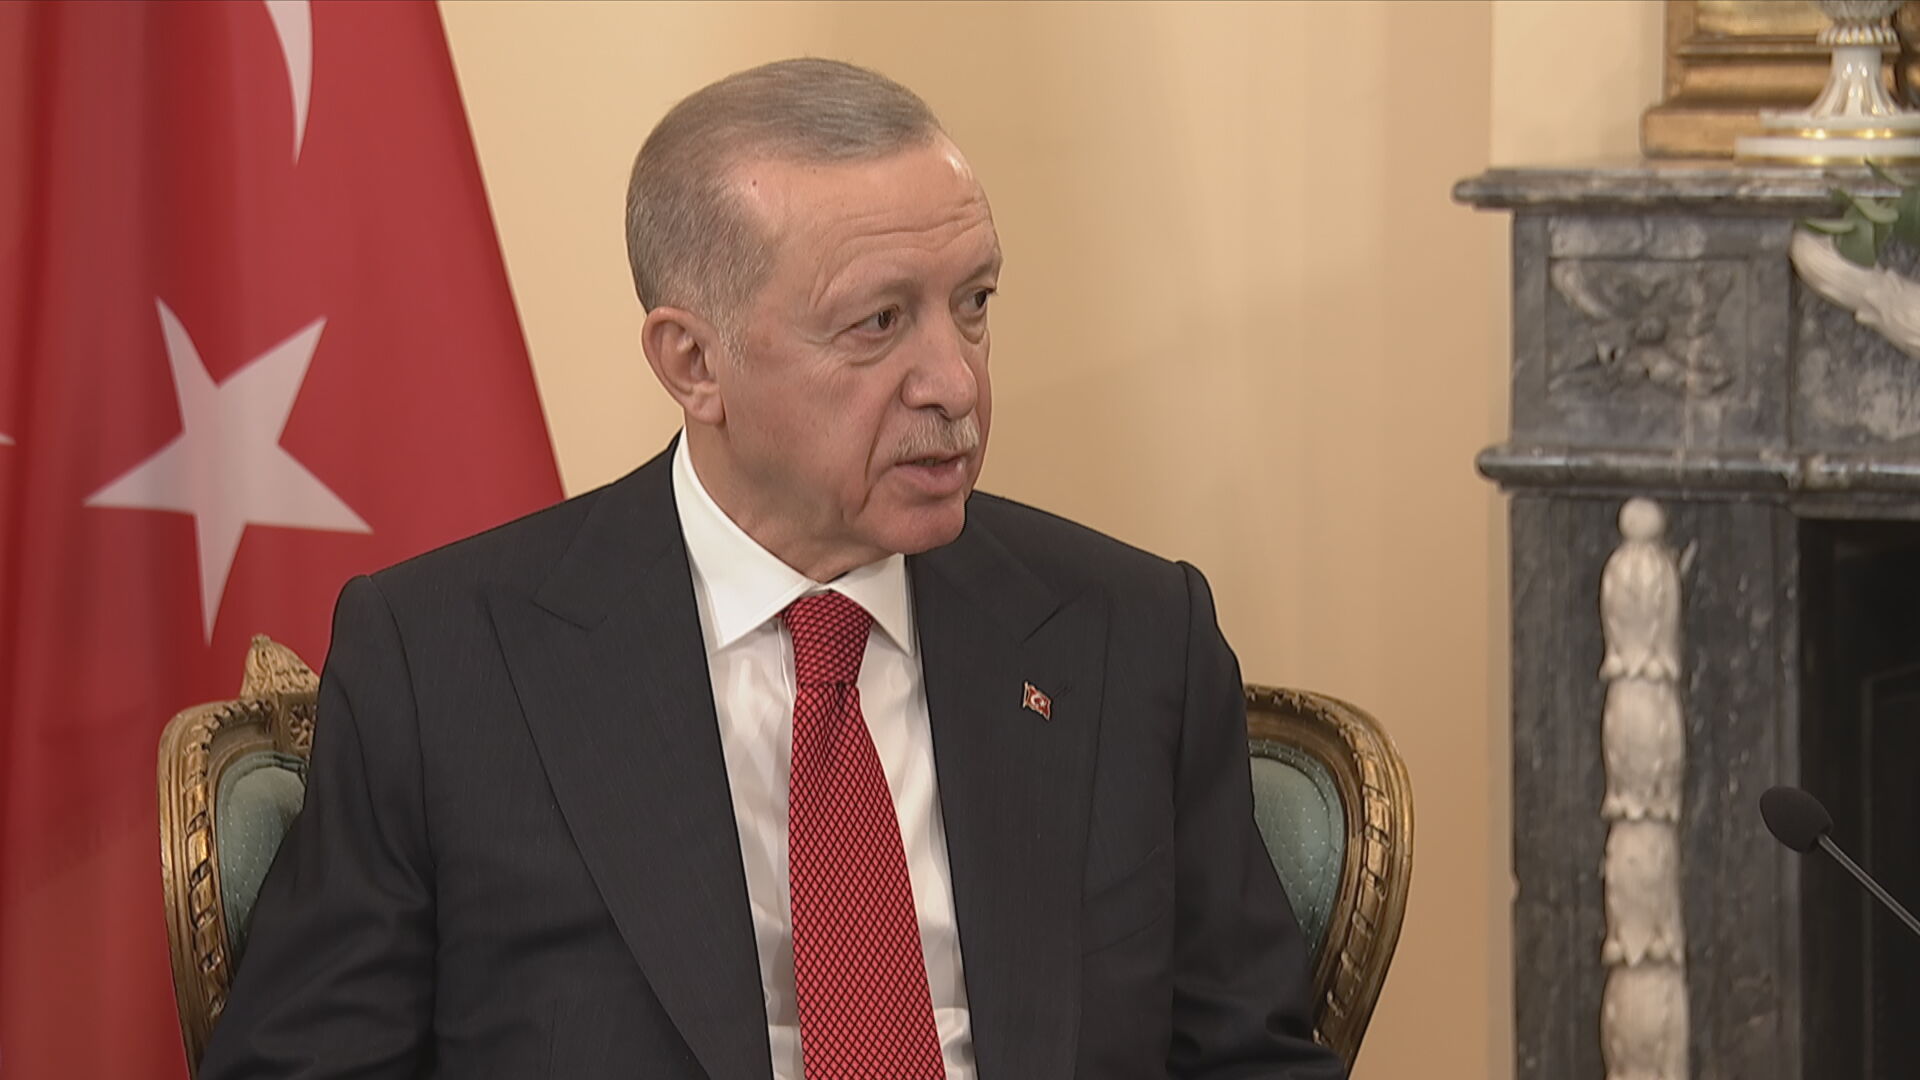 Τ. Ερντογάν: Πιστεύω ότι η αυτή η Σύνοδος θα αποτελέσει ευκαιρία για μια νέα εποχή στις σχέσεις Ελλάδας-Τουρκίας